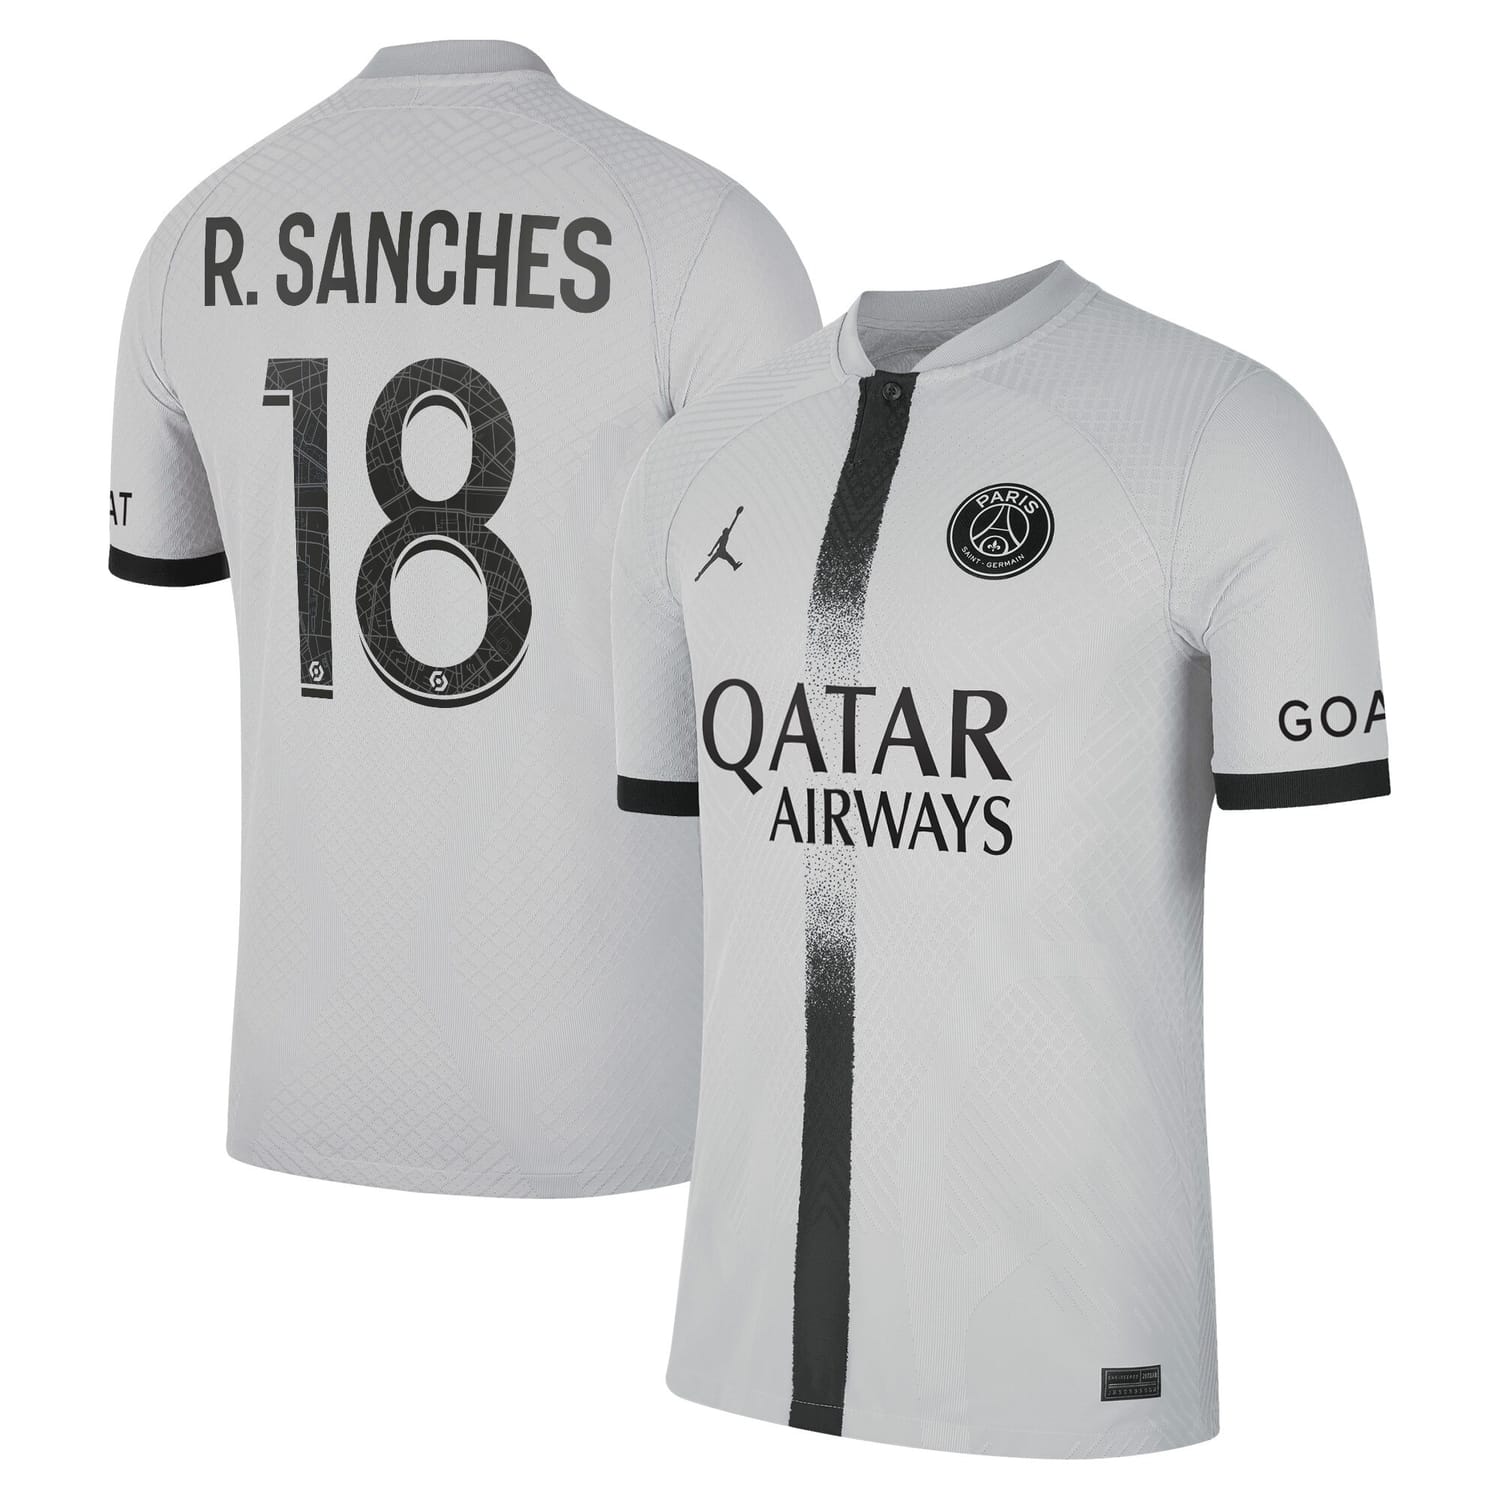 Ligue 1 Paris Saint-Germain Away Authentic Jersey Shirt 2022-23 player Renato Sanches 18 printing for Men